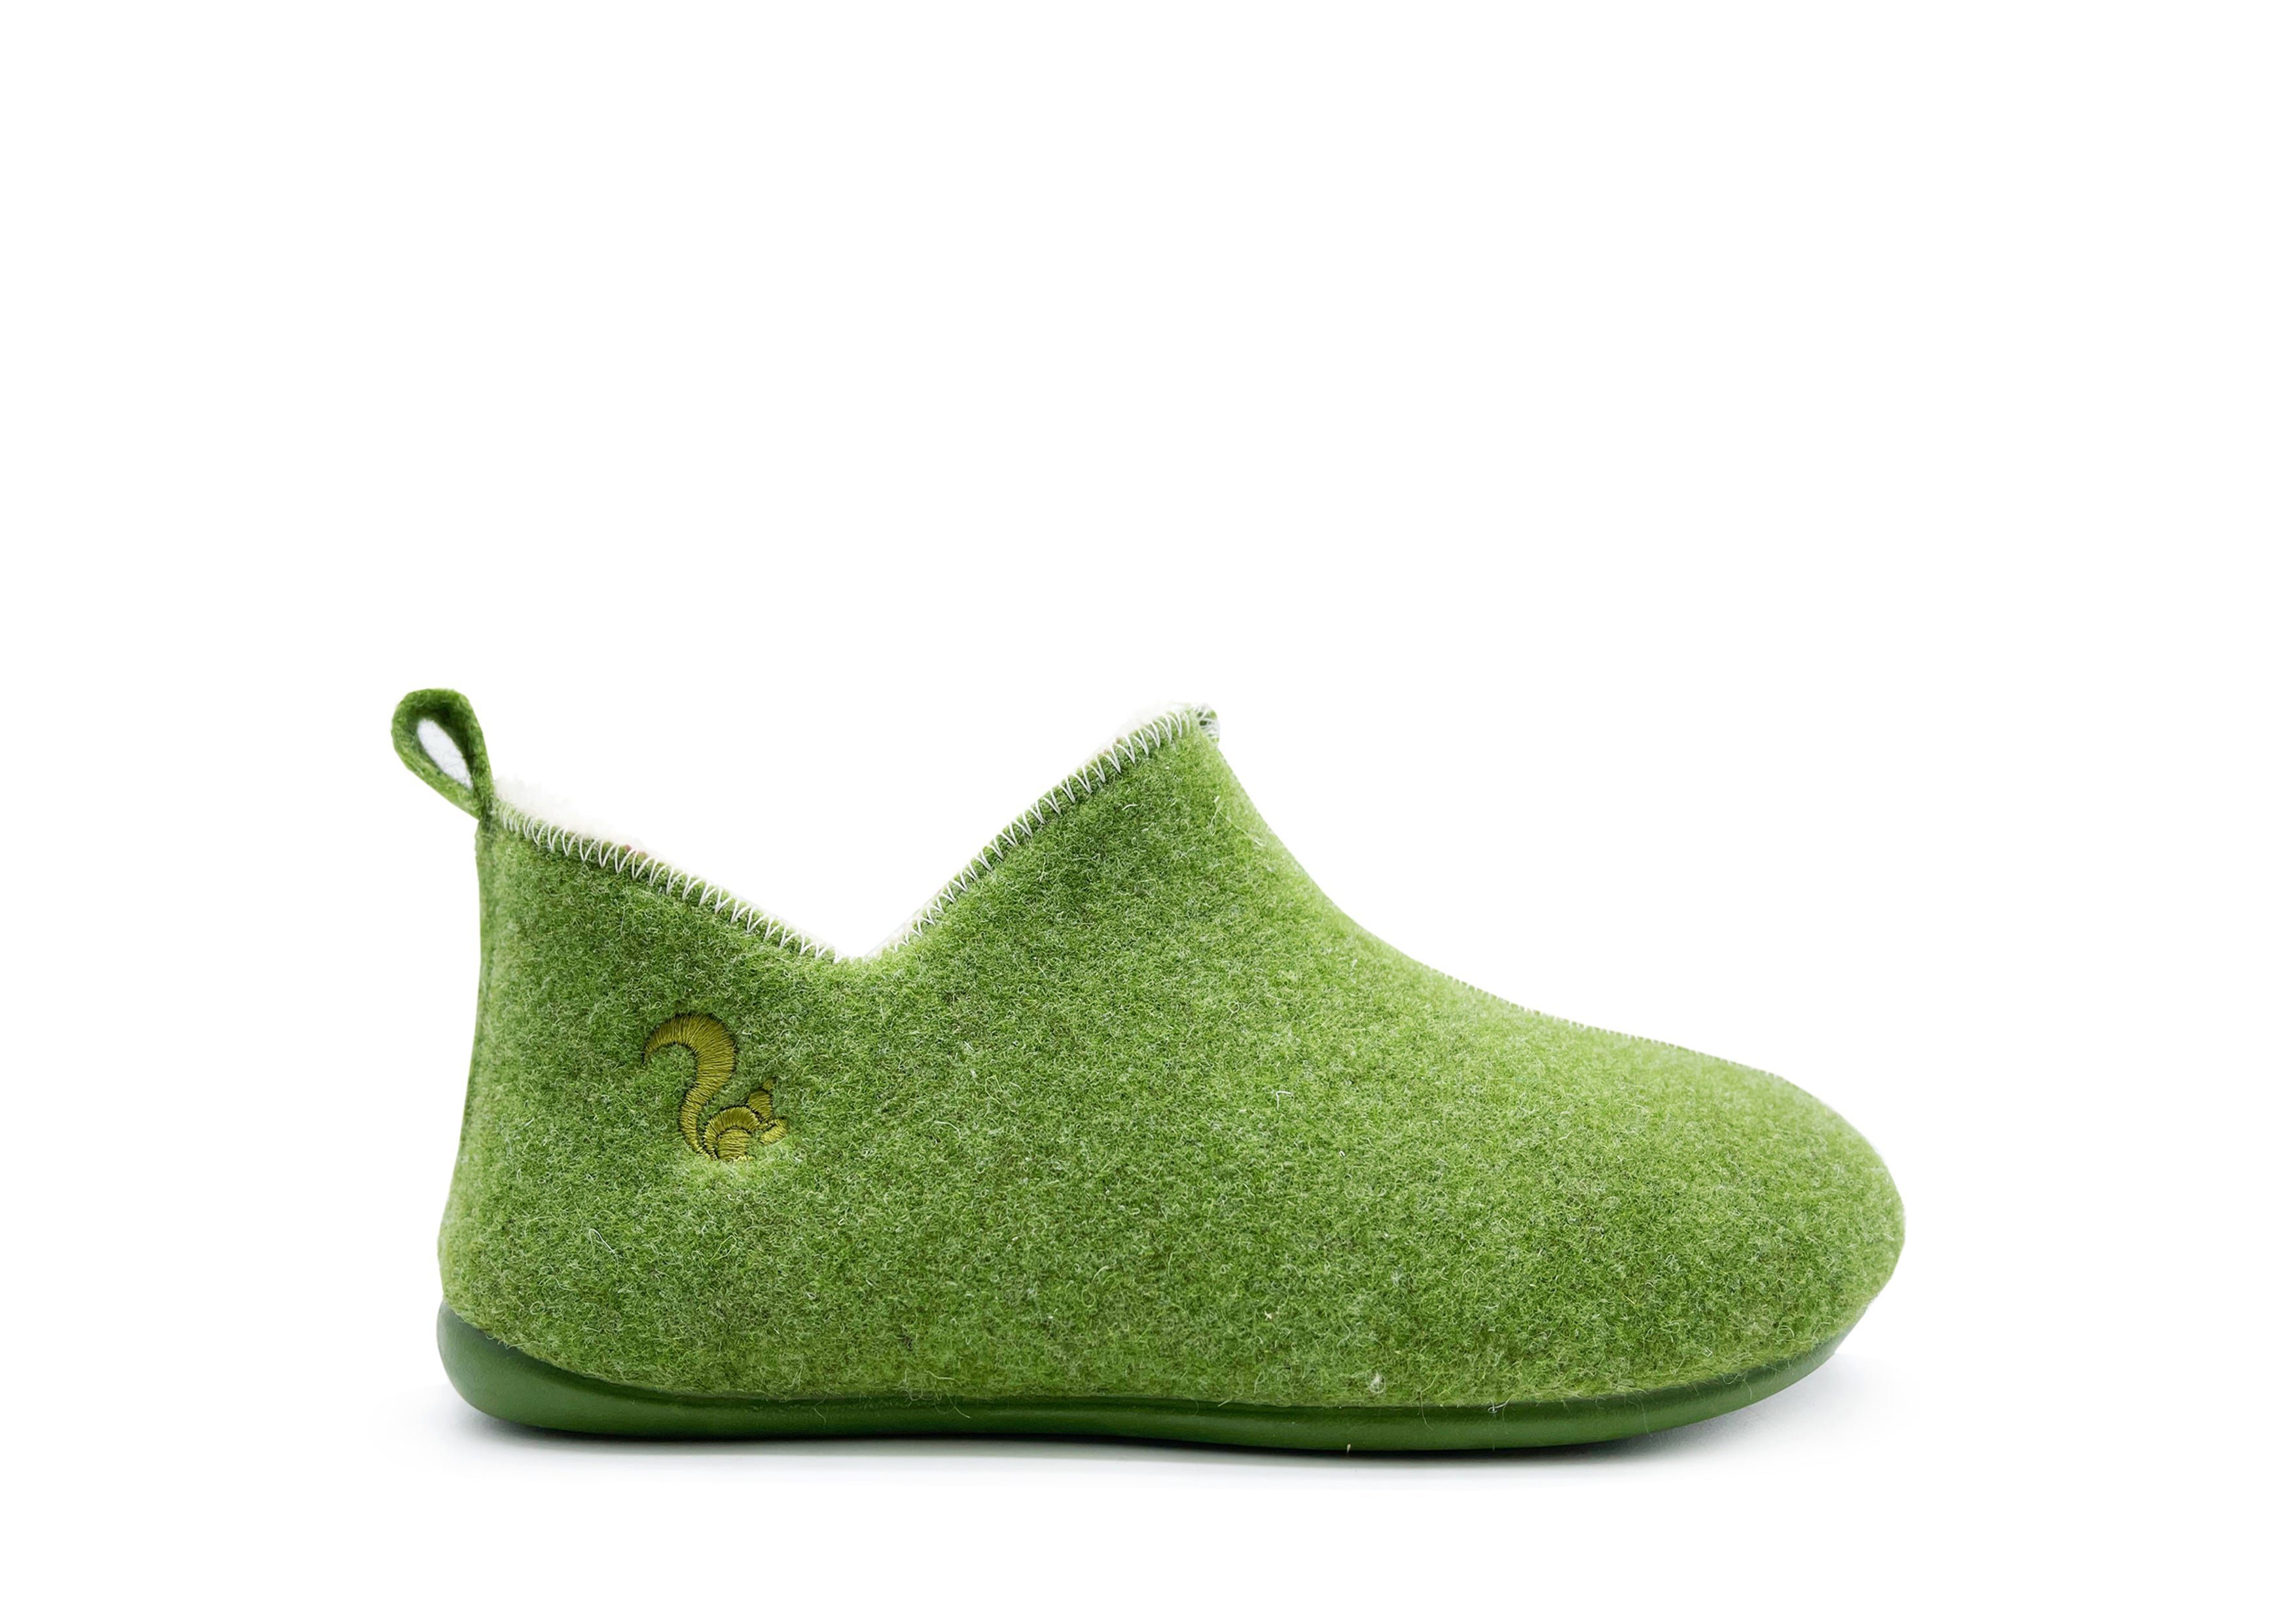 thies 1856 ® Kids Wool Slipper Boot Slipper Green